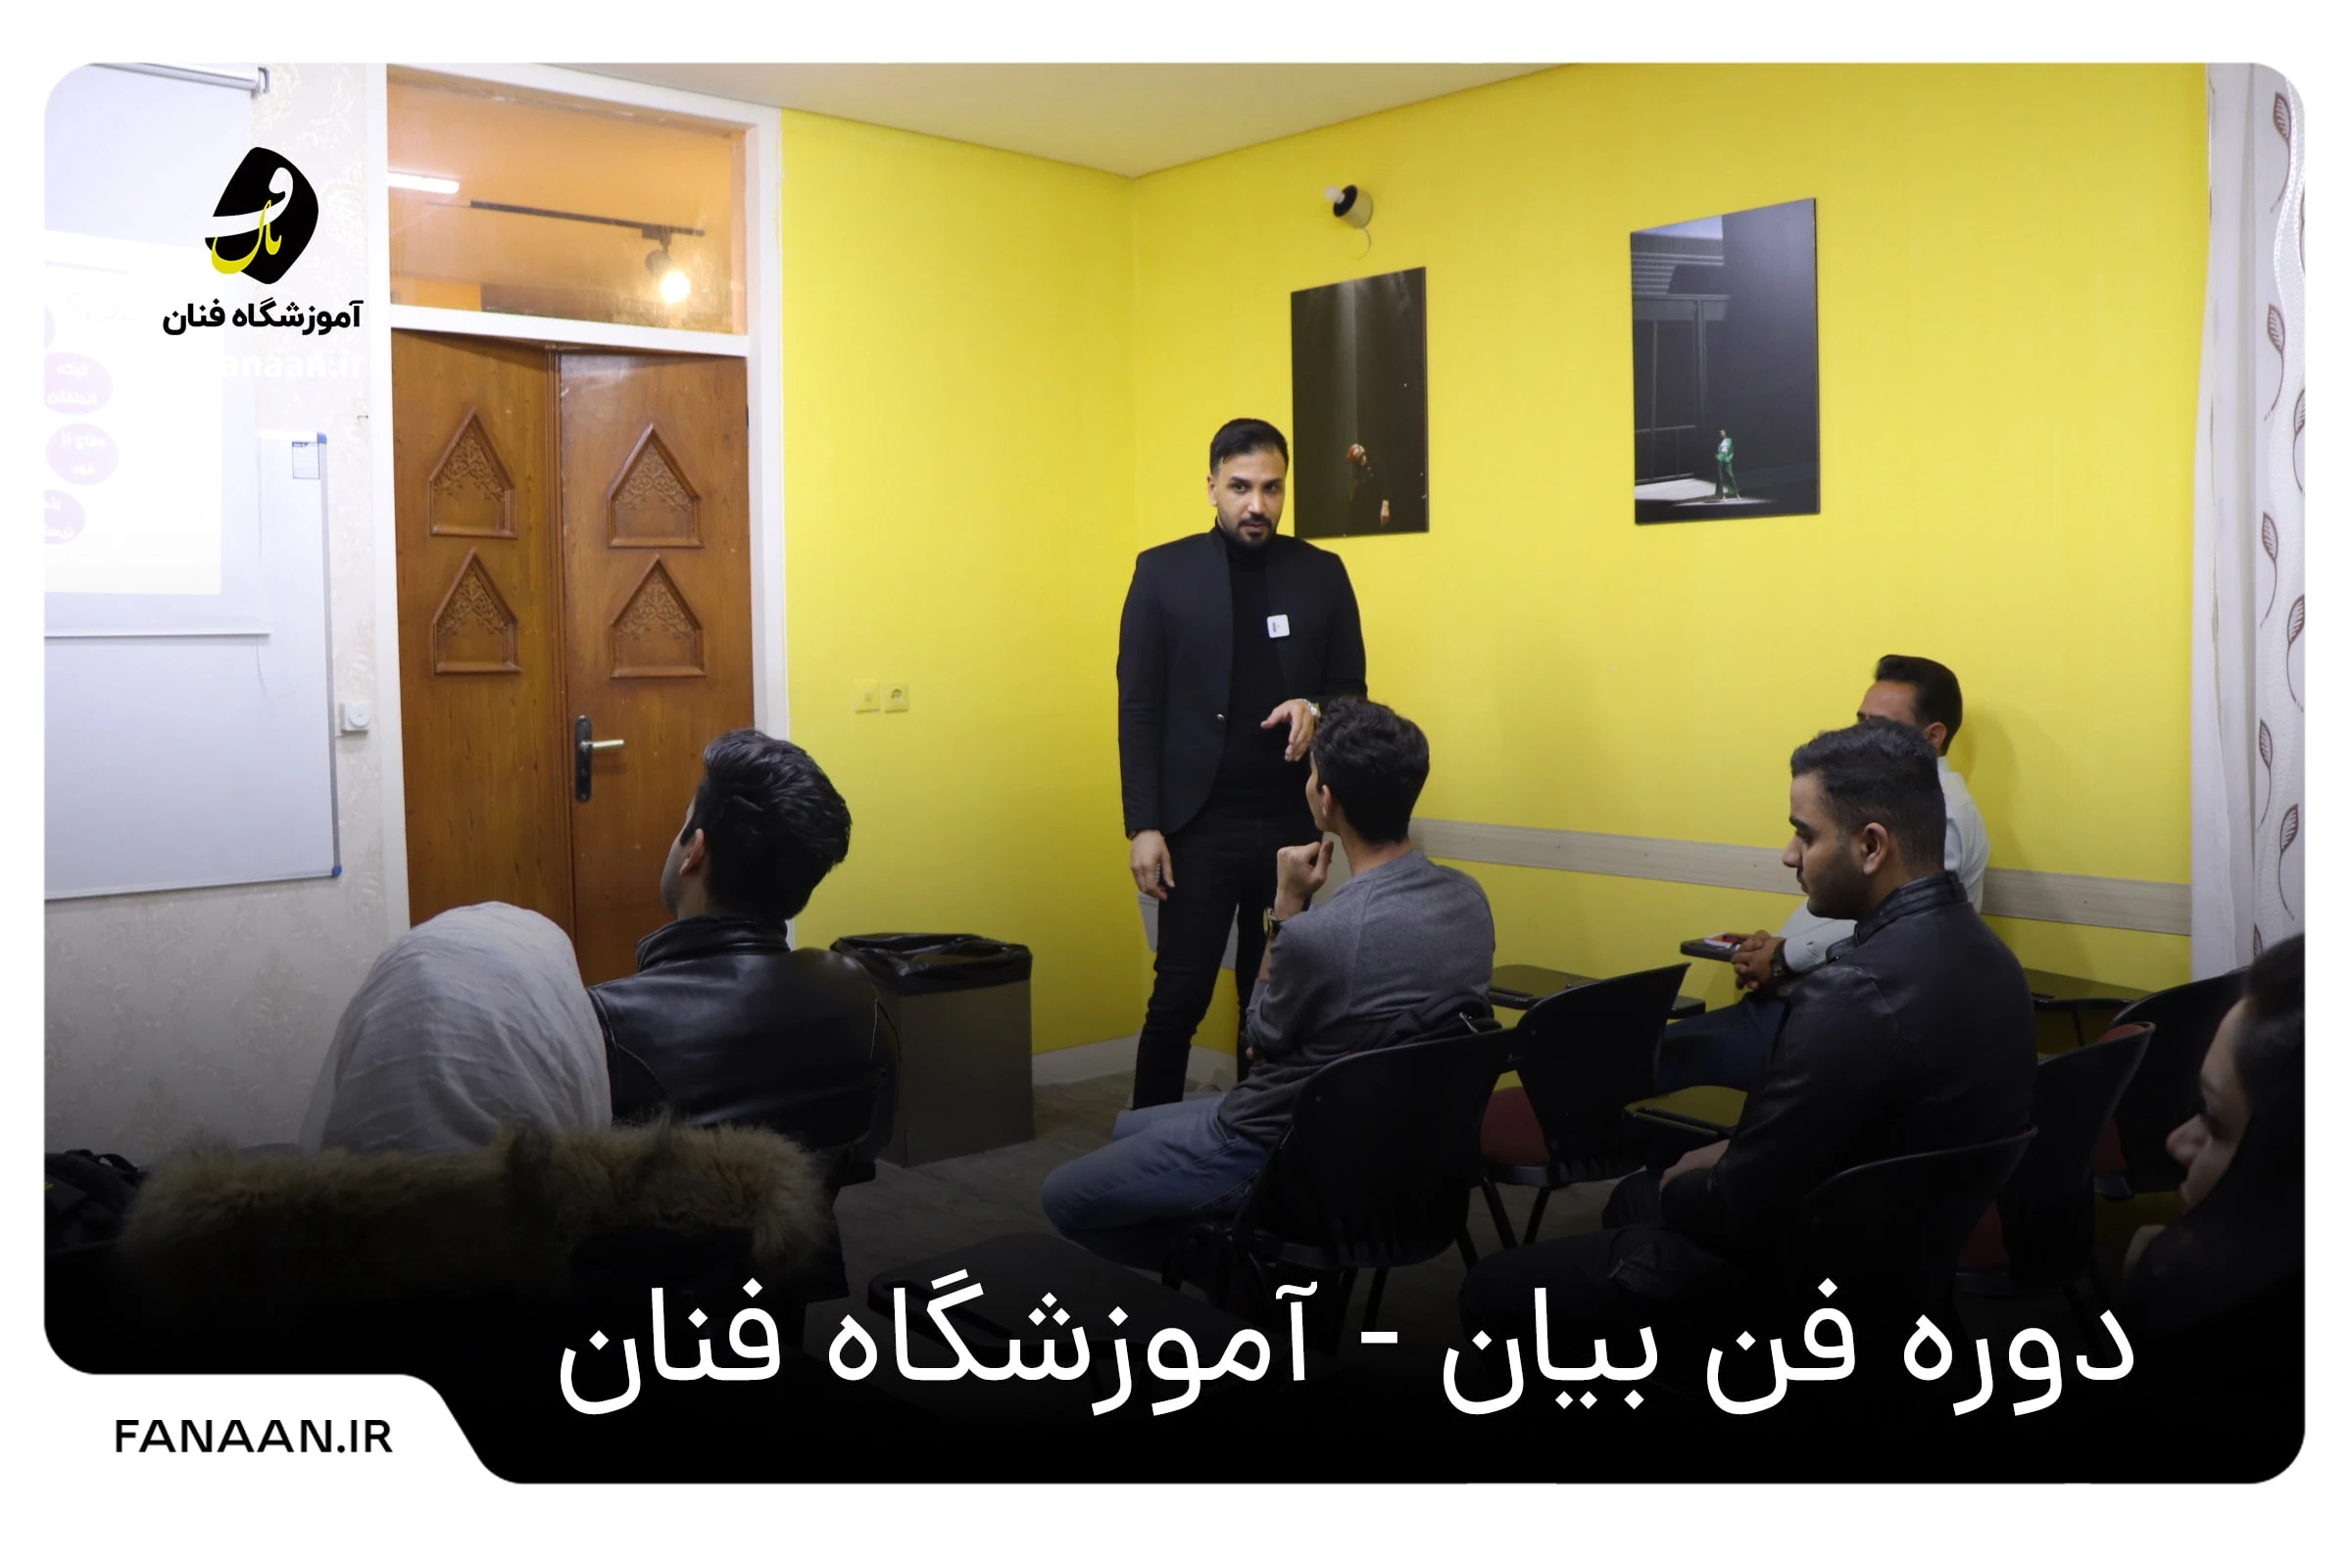 بهترین آموزشگاه فن بیا در زنجان